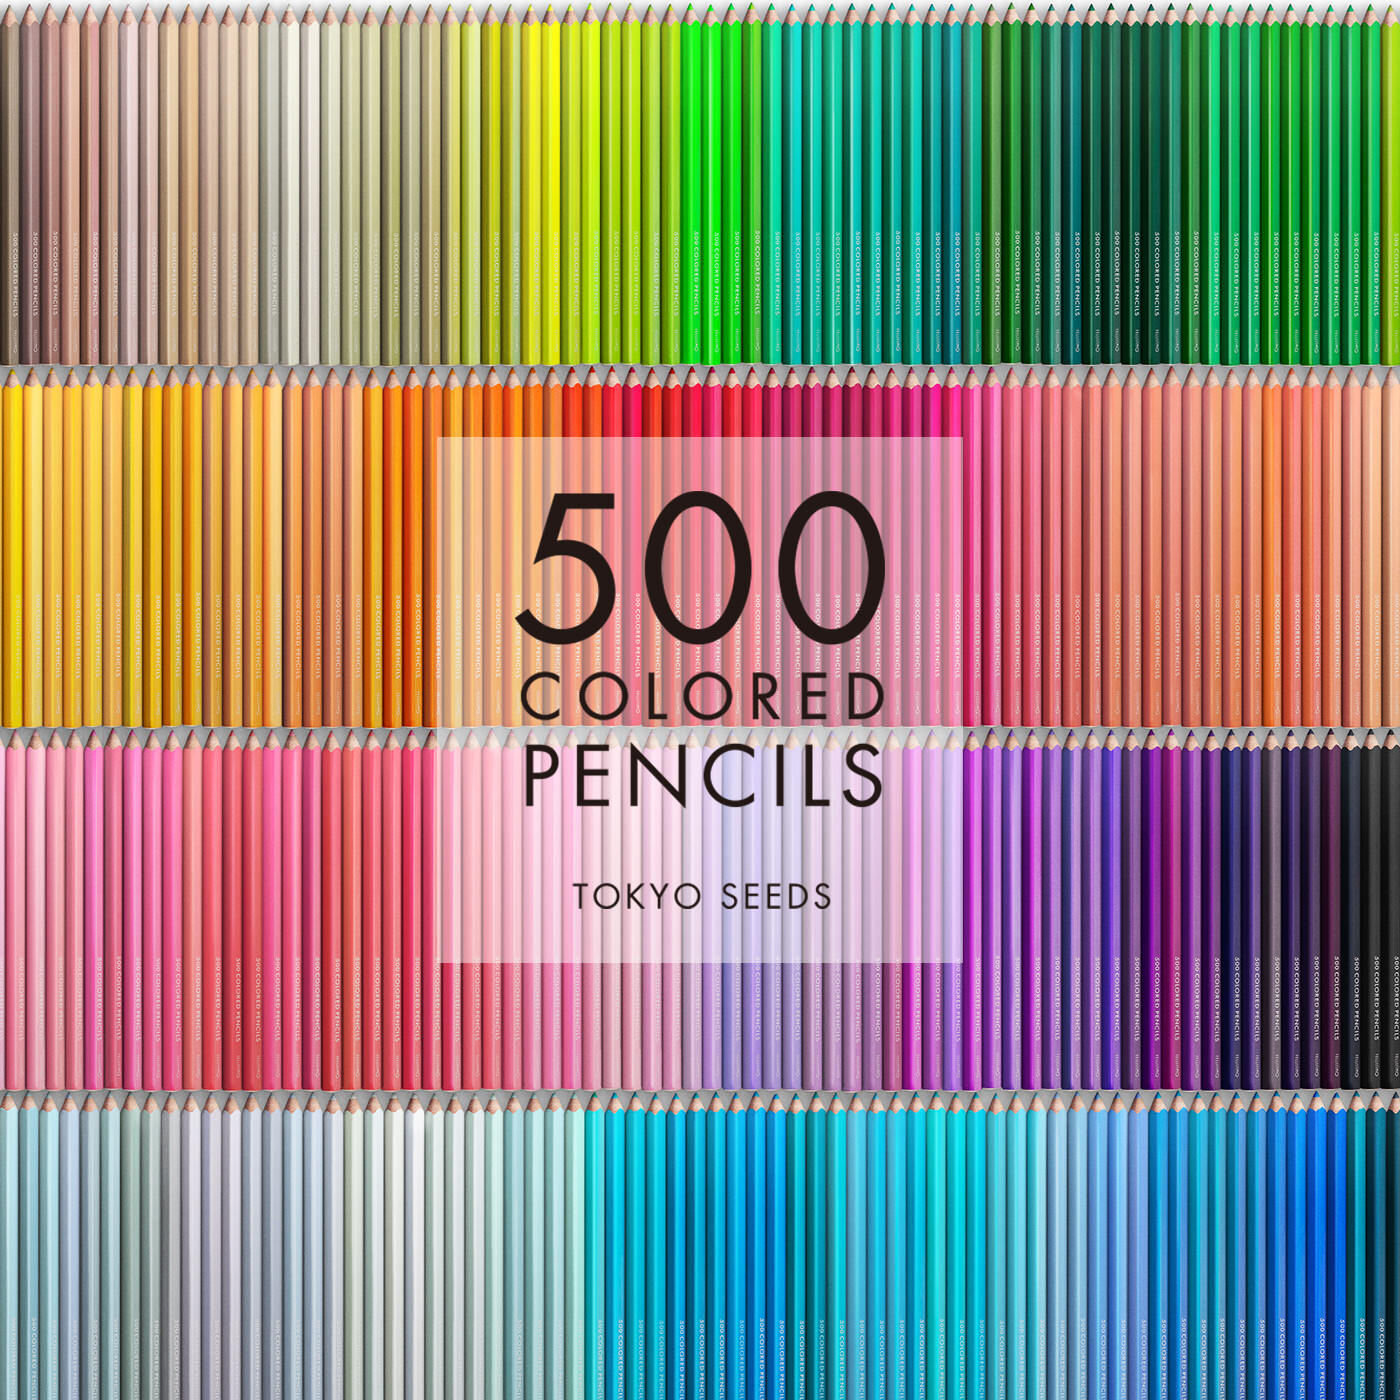 Real Stock|【185/500 ACORN CRUNCH】500色の色えんぴつ TOKYO SEEDS|1992年、世界初の「500色」という膨大な色数の色えんぴつが誕生して以来、その販売数は発売当初から合わせると、世界55ヵ国10万セット以上。今回、メイド・イン・ジャパンにこだわり、すべてが新しく生まれ変わって登場しました。